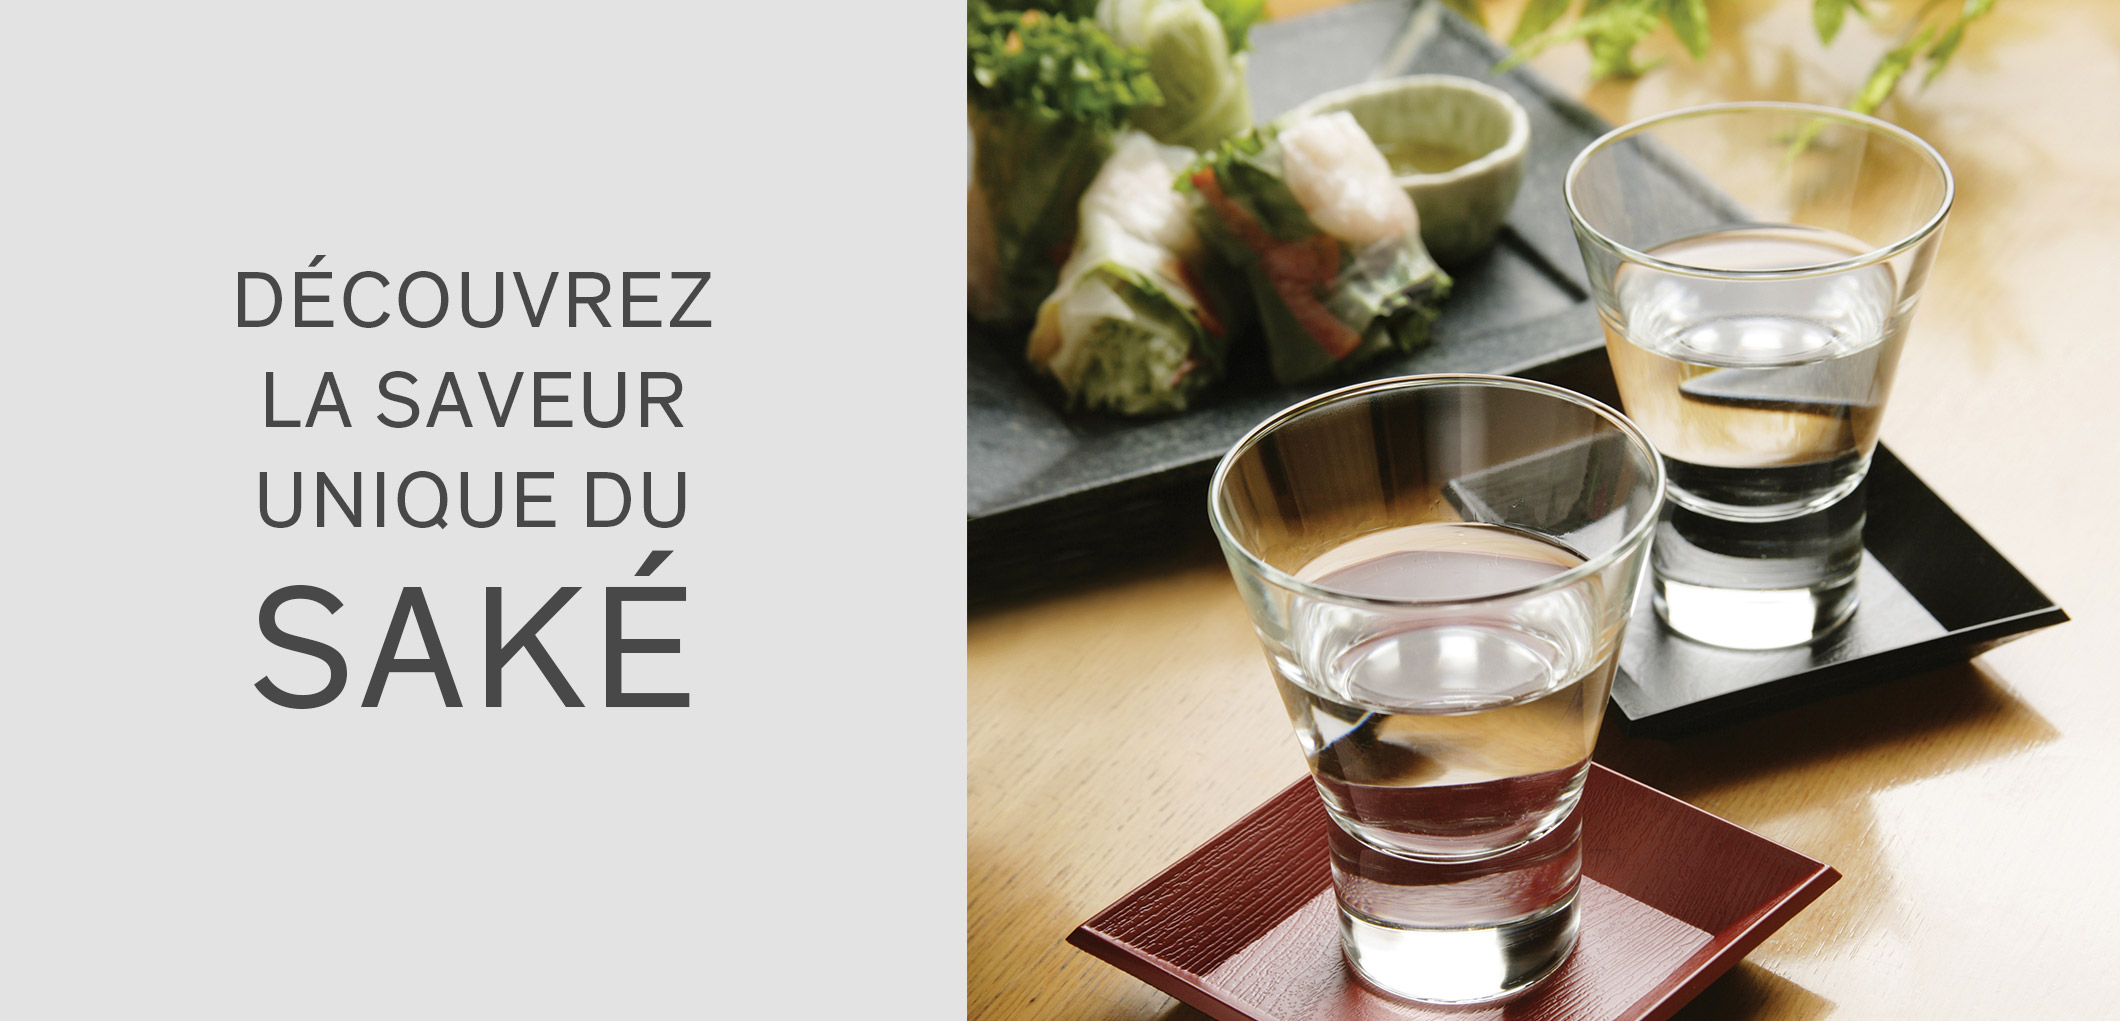 Découvrez la saveur unique du saké